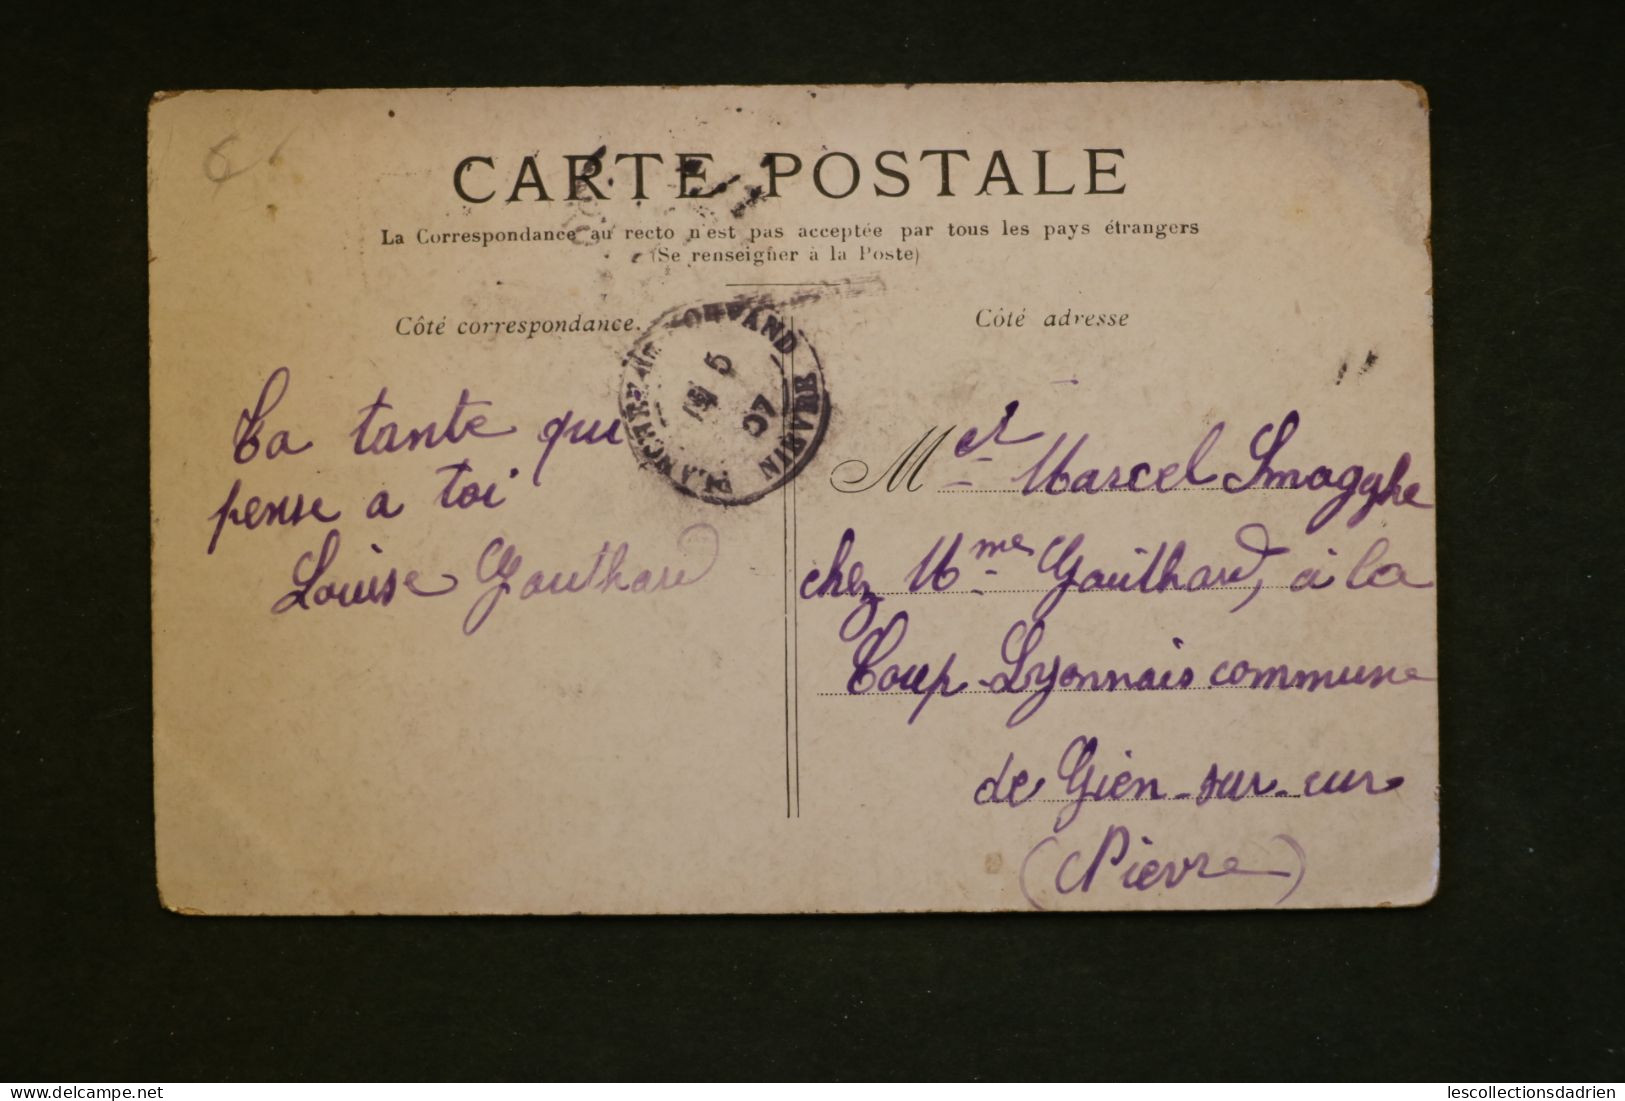 Carte postale Paris Palais royal animée calèches